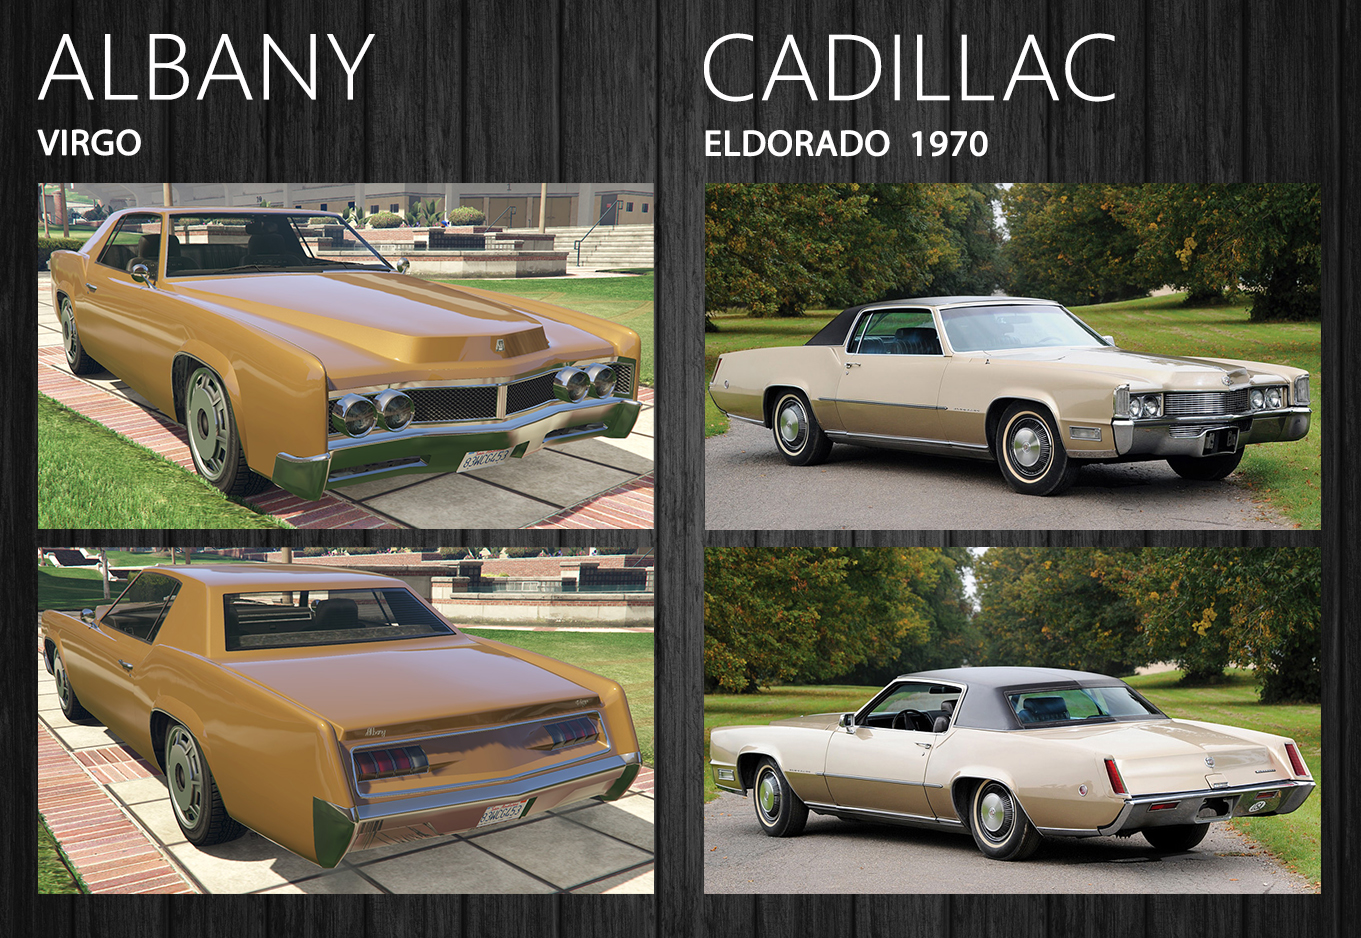 Albany Virgo - Cadillac Eldorado.